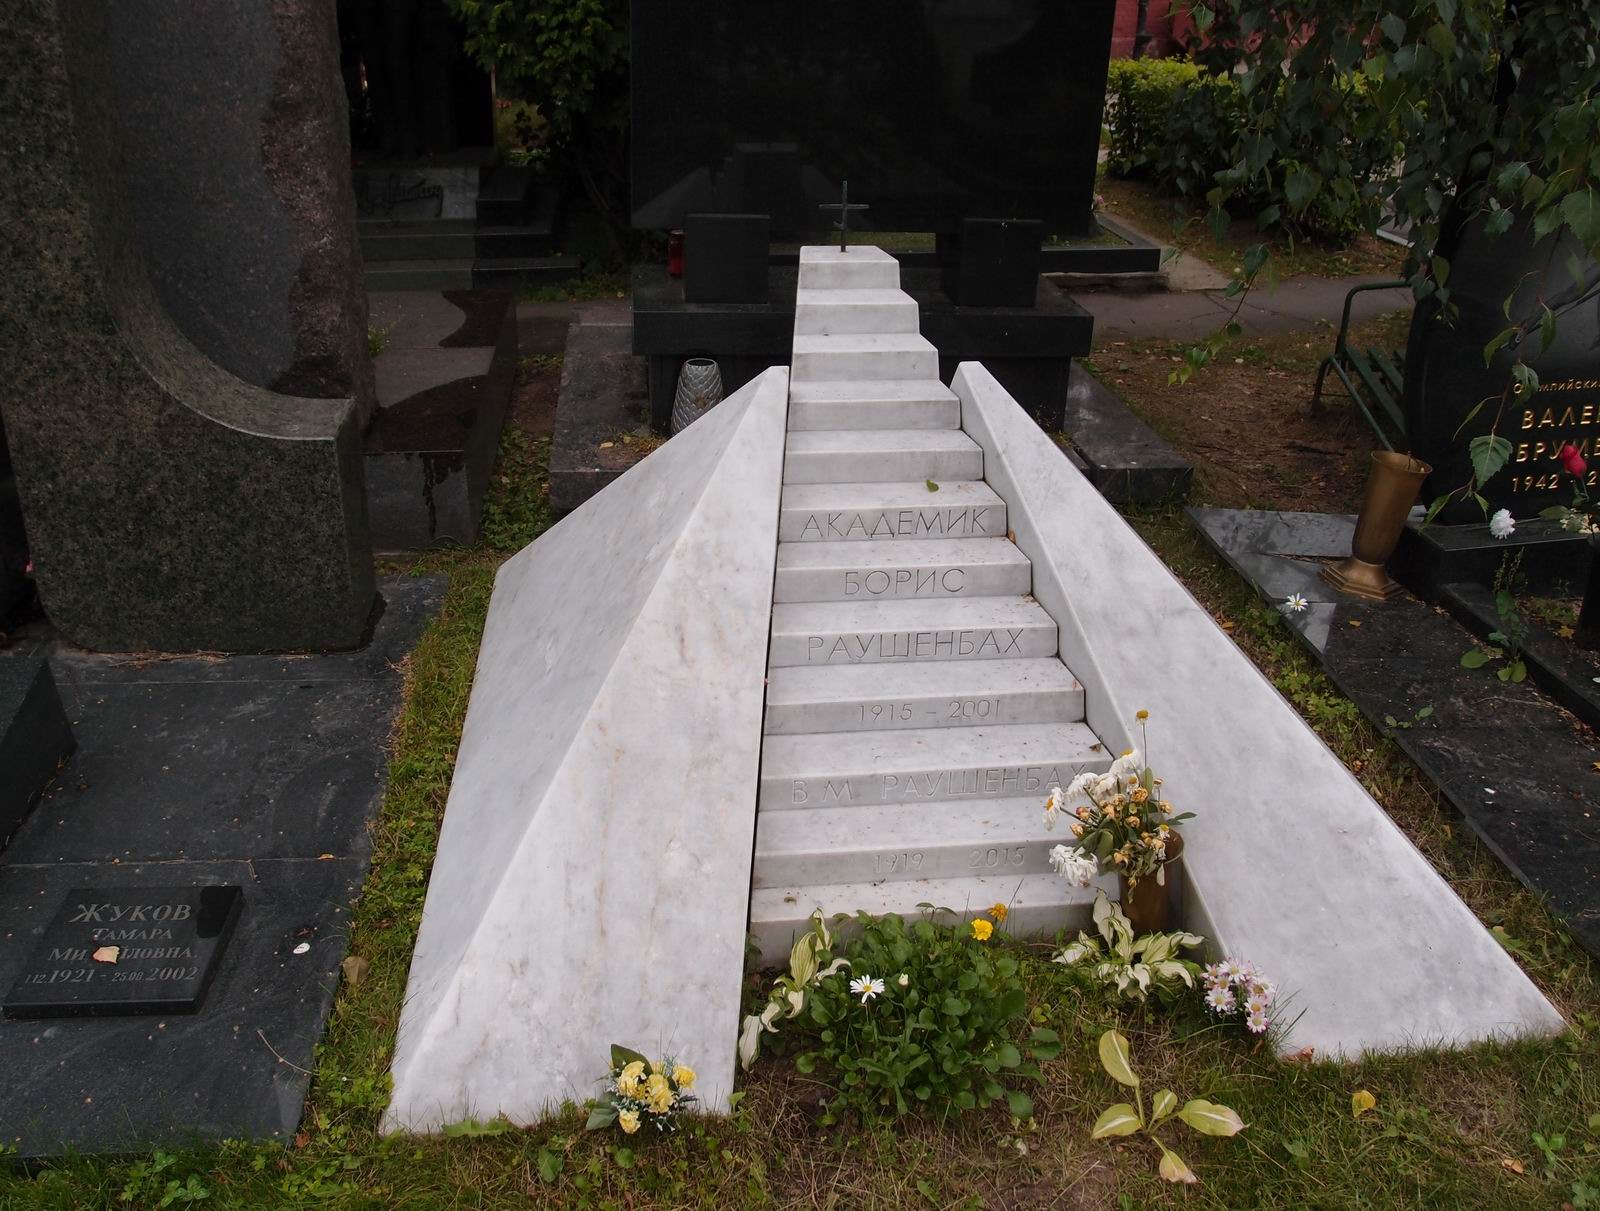 Памятник на могиле Раушенбаха Б.В. (1915-2001), ск. Г.Франгулян, на Новодевичьем кладбище (10-6-20).